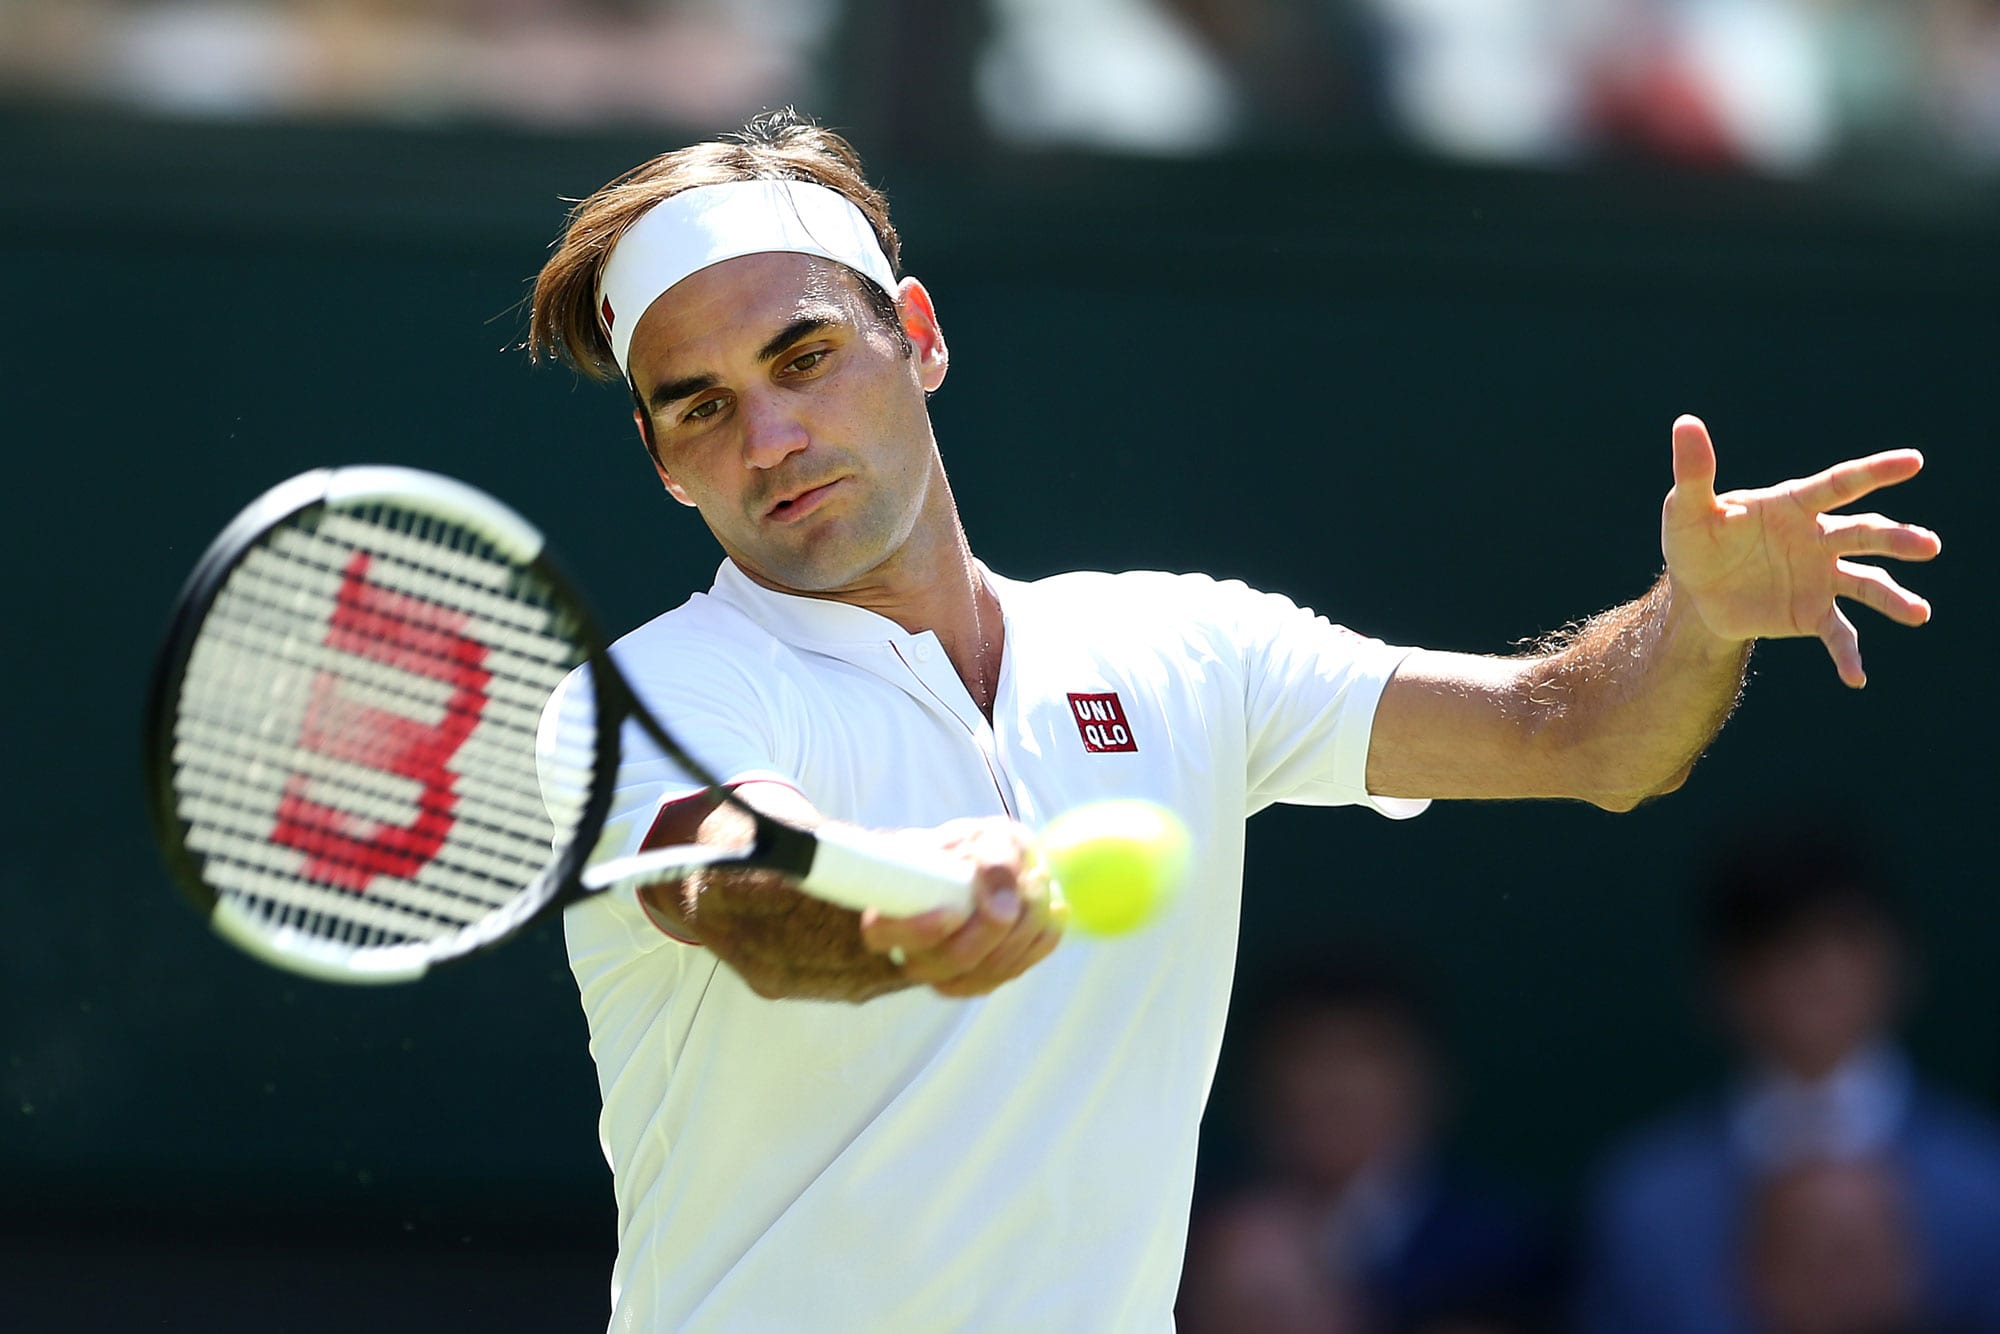 Roger Federer at Wimbledon in shirt, not